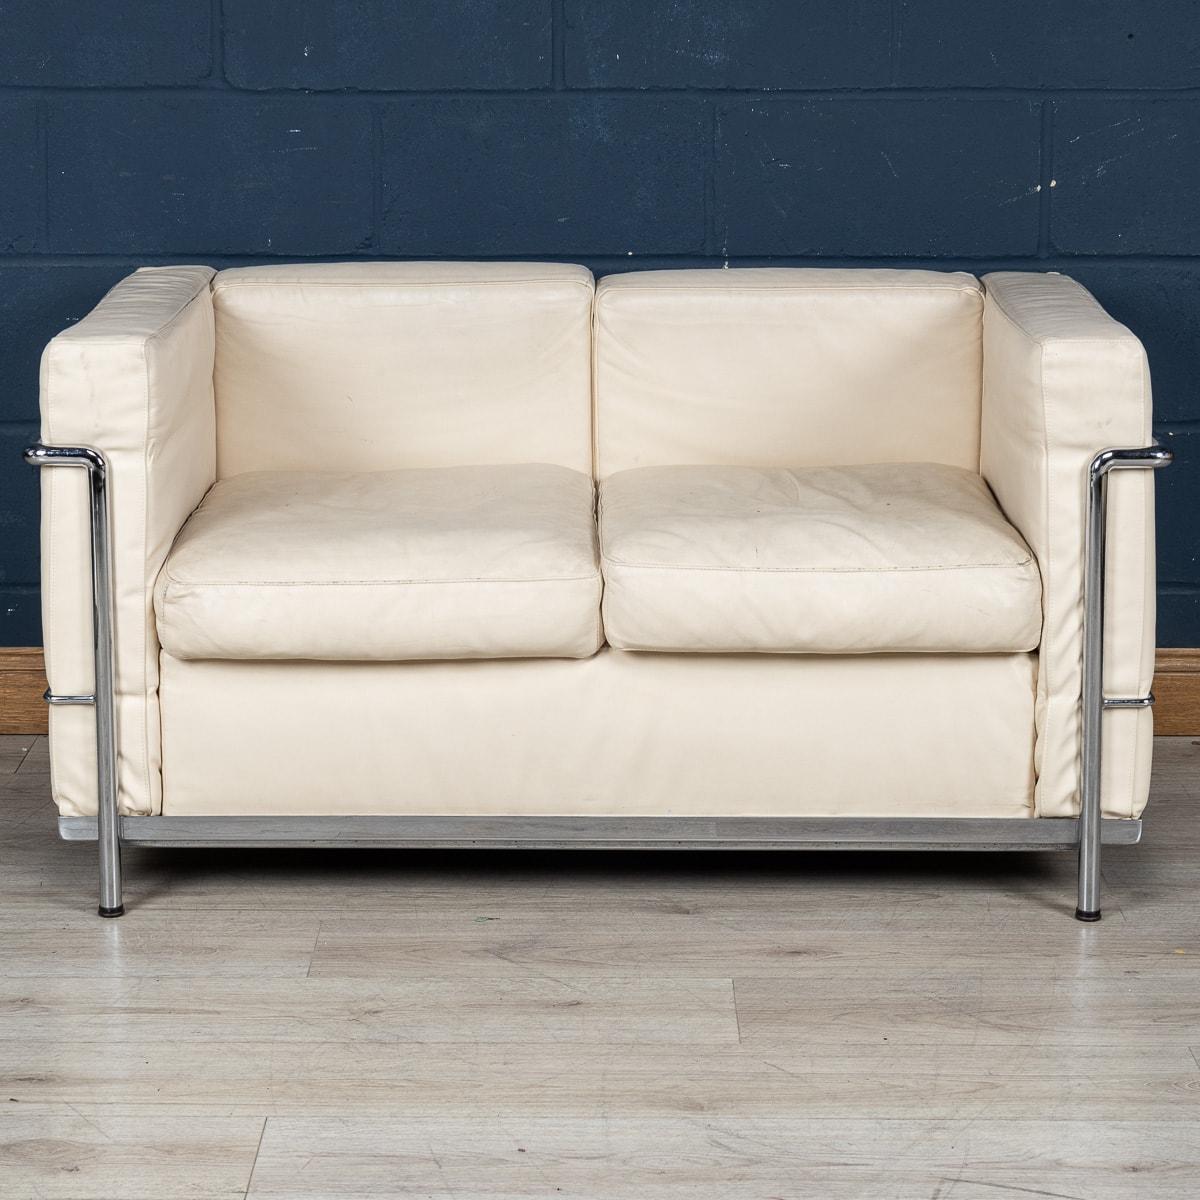 Un canapé en cuir blanc à la manière du canapé LC2 de Le Corbusier, fabriqué en Italie dans les années 1980. Il capture l'essence de l'esthétique vintage et offre le même aspect emblématique que ses homologues. Ce canapé permet aux amateurs de